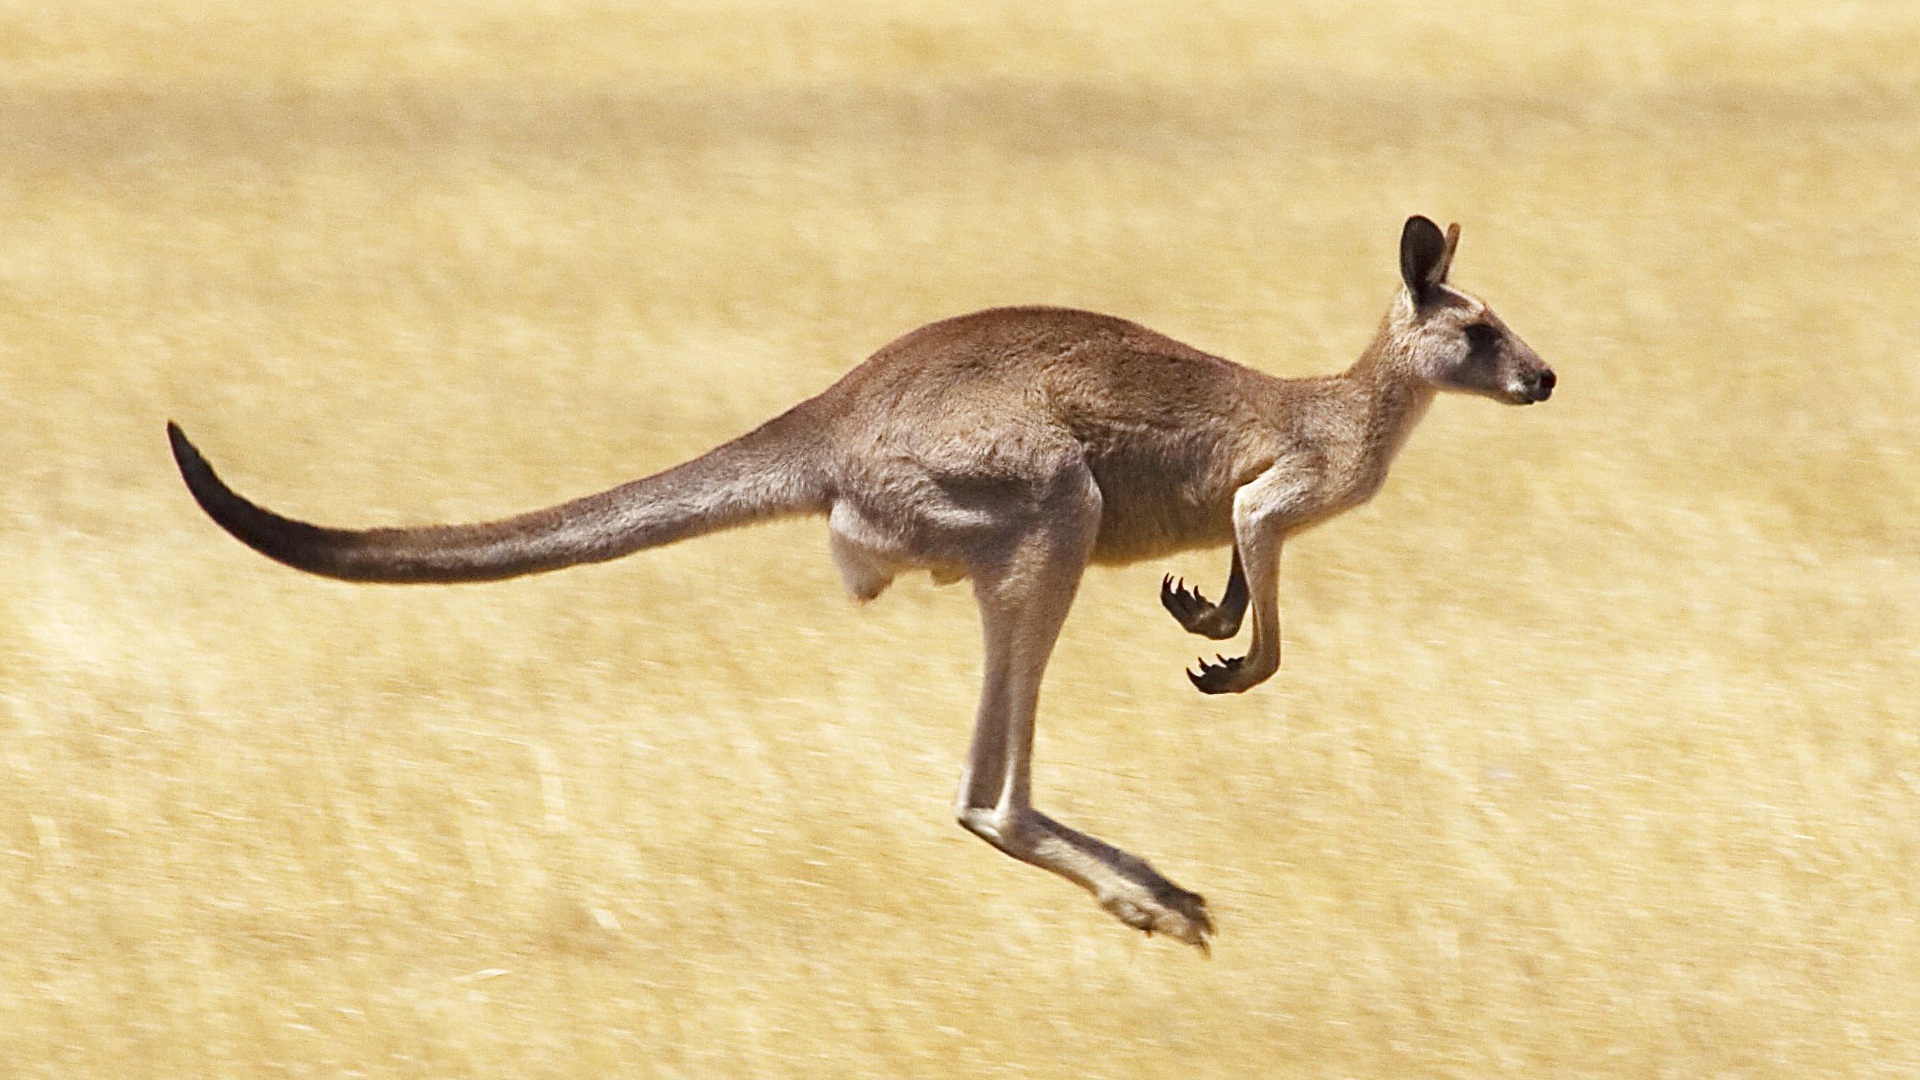 Kangaroo HD Photos Desktop Background Wallpaper Image